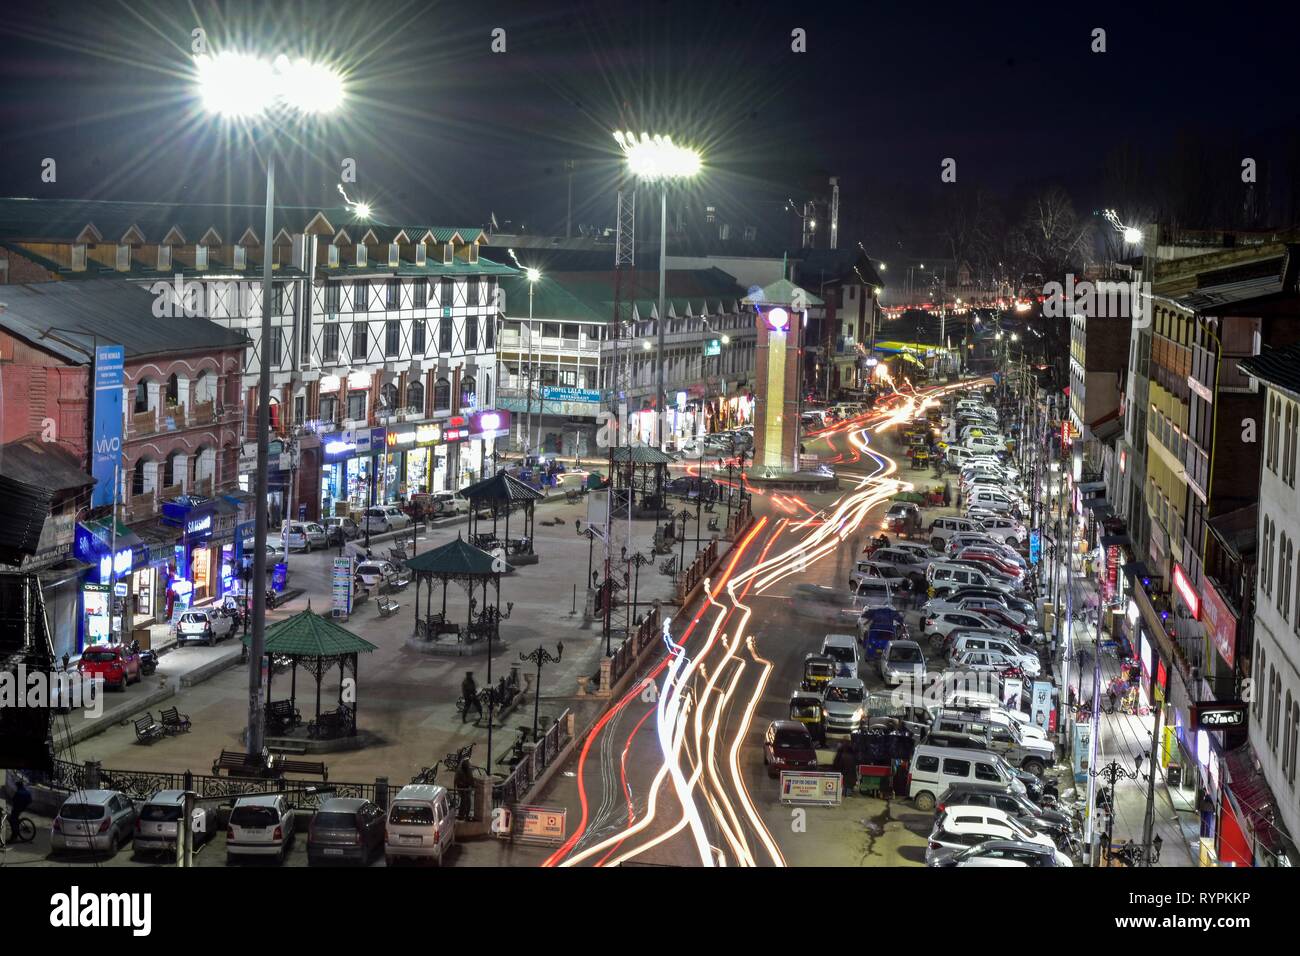 Bis spät in die Nacht Blick auf kommerzielle Nabe Lal Chowk in Srinagar, Kashmir. Kaschmir ist die nördlichste Region des Indischen Subkontinents. Es ist derzeit ein umstrittenes Territorium, von drei Ländern: Indien, Pakistan und China. Stockfoto